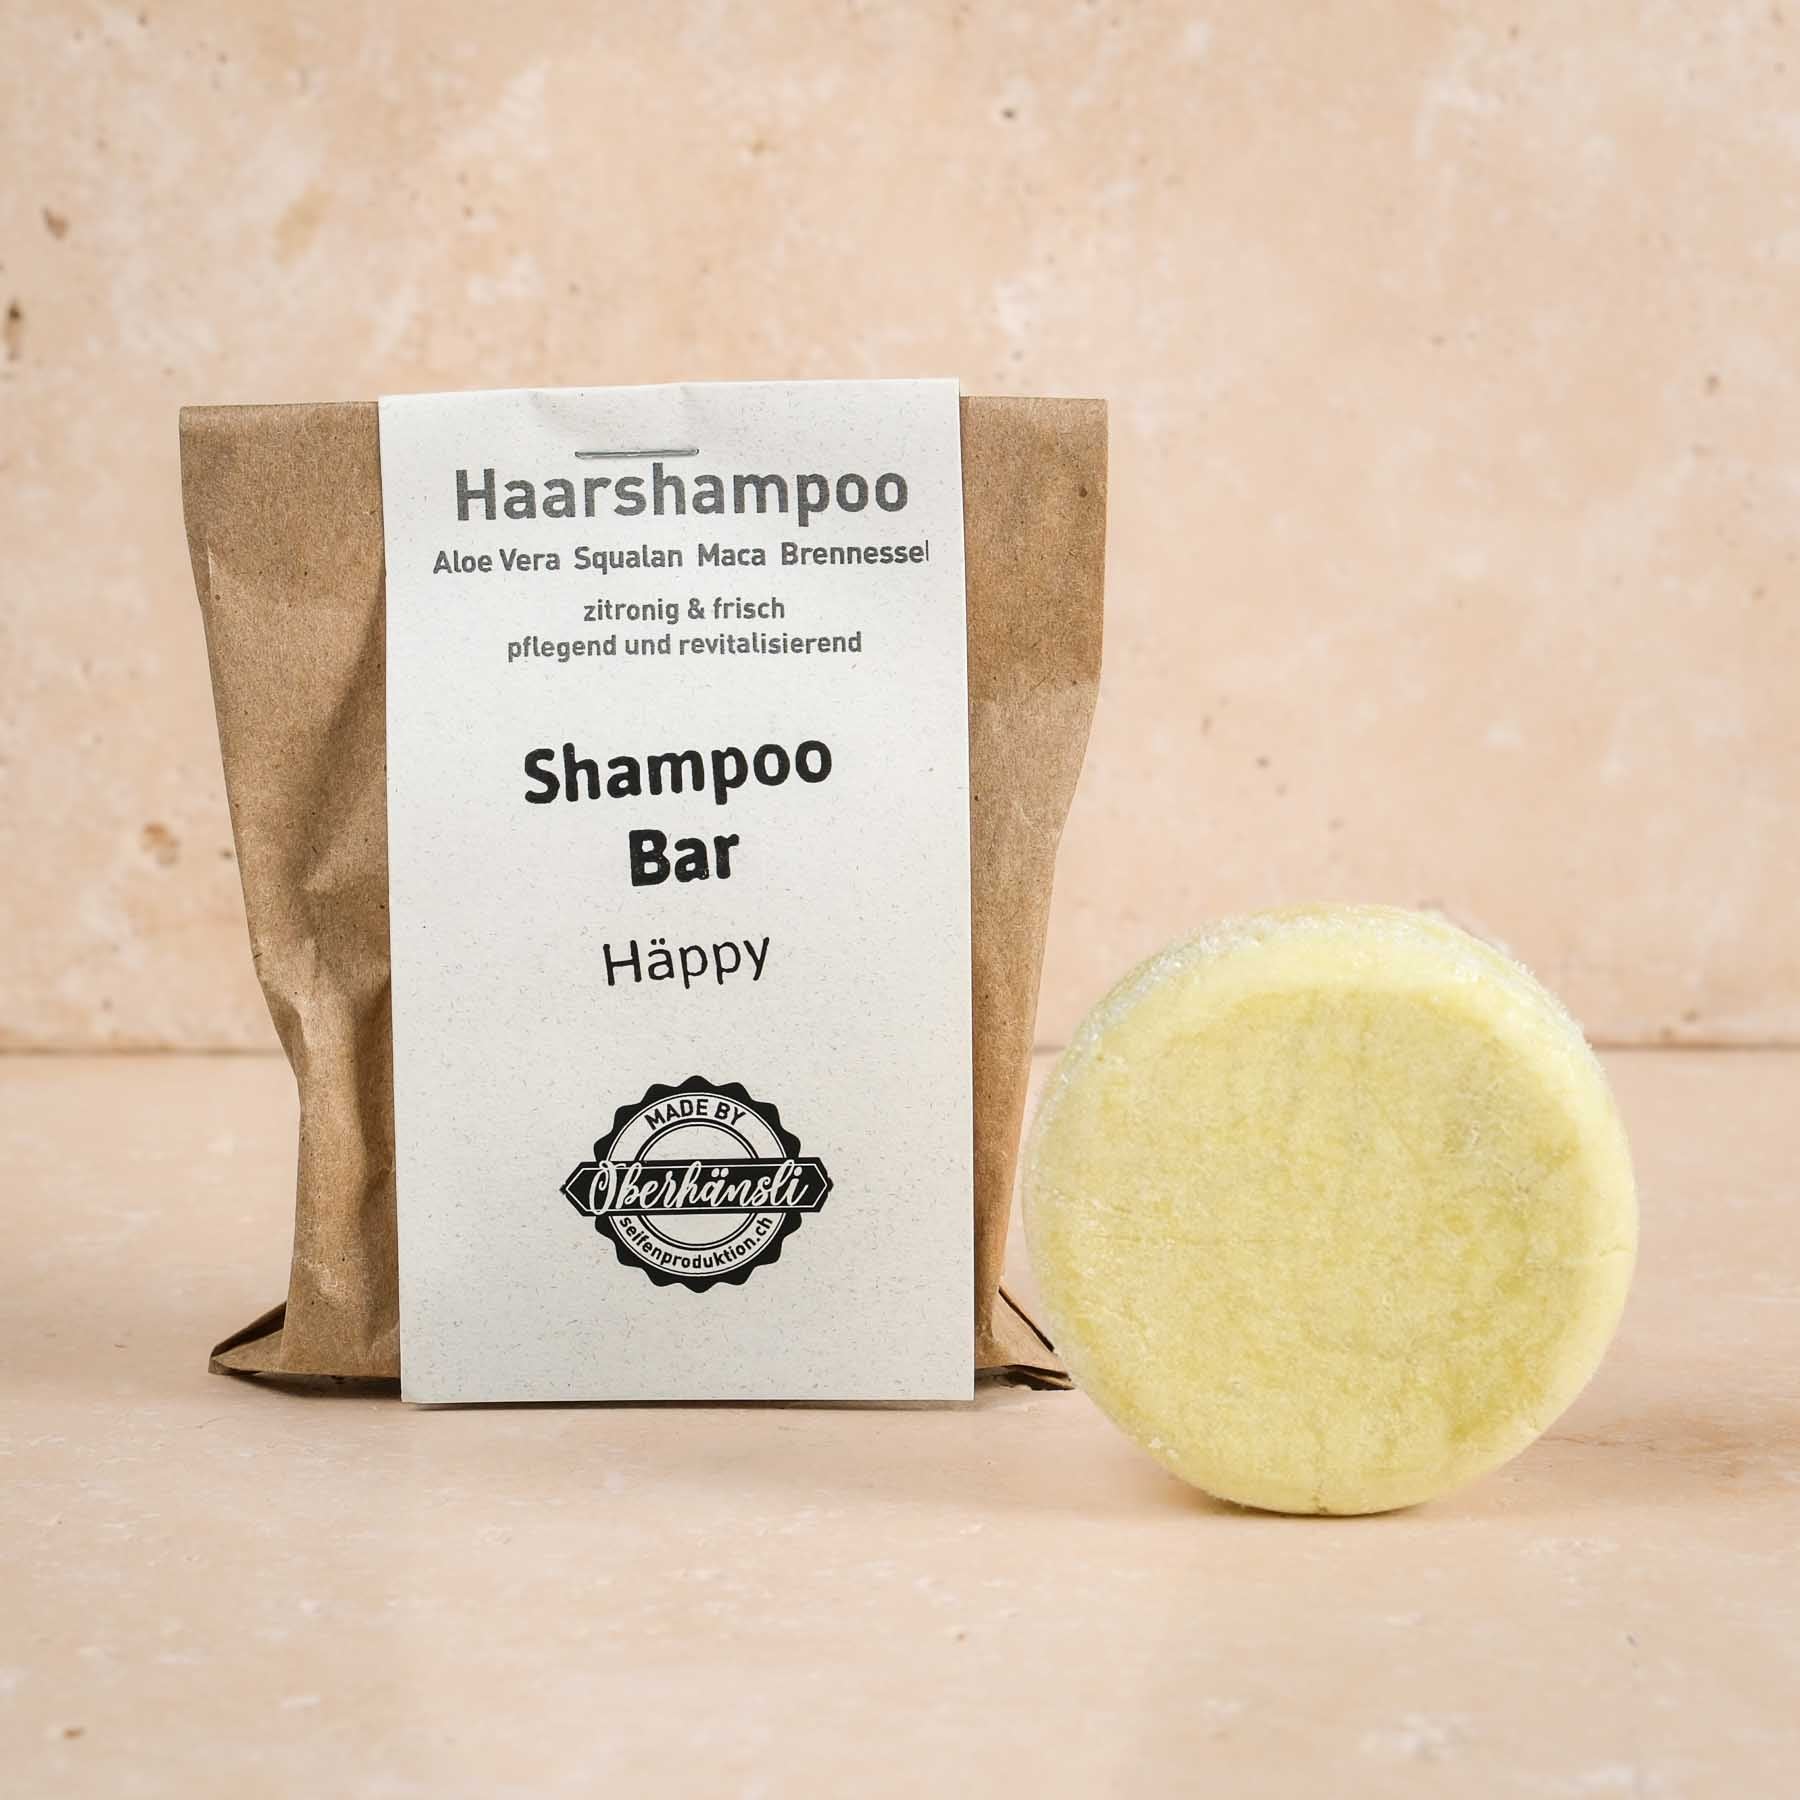 Sapone per capelli - Shampoo Bar - Häppy